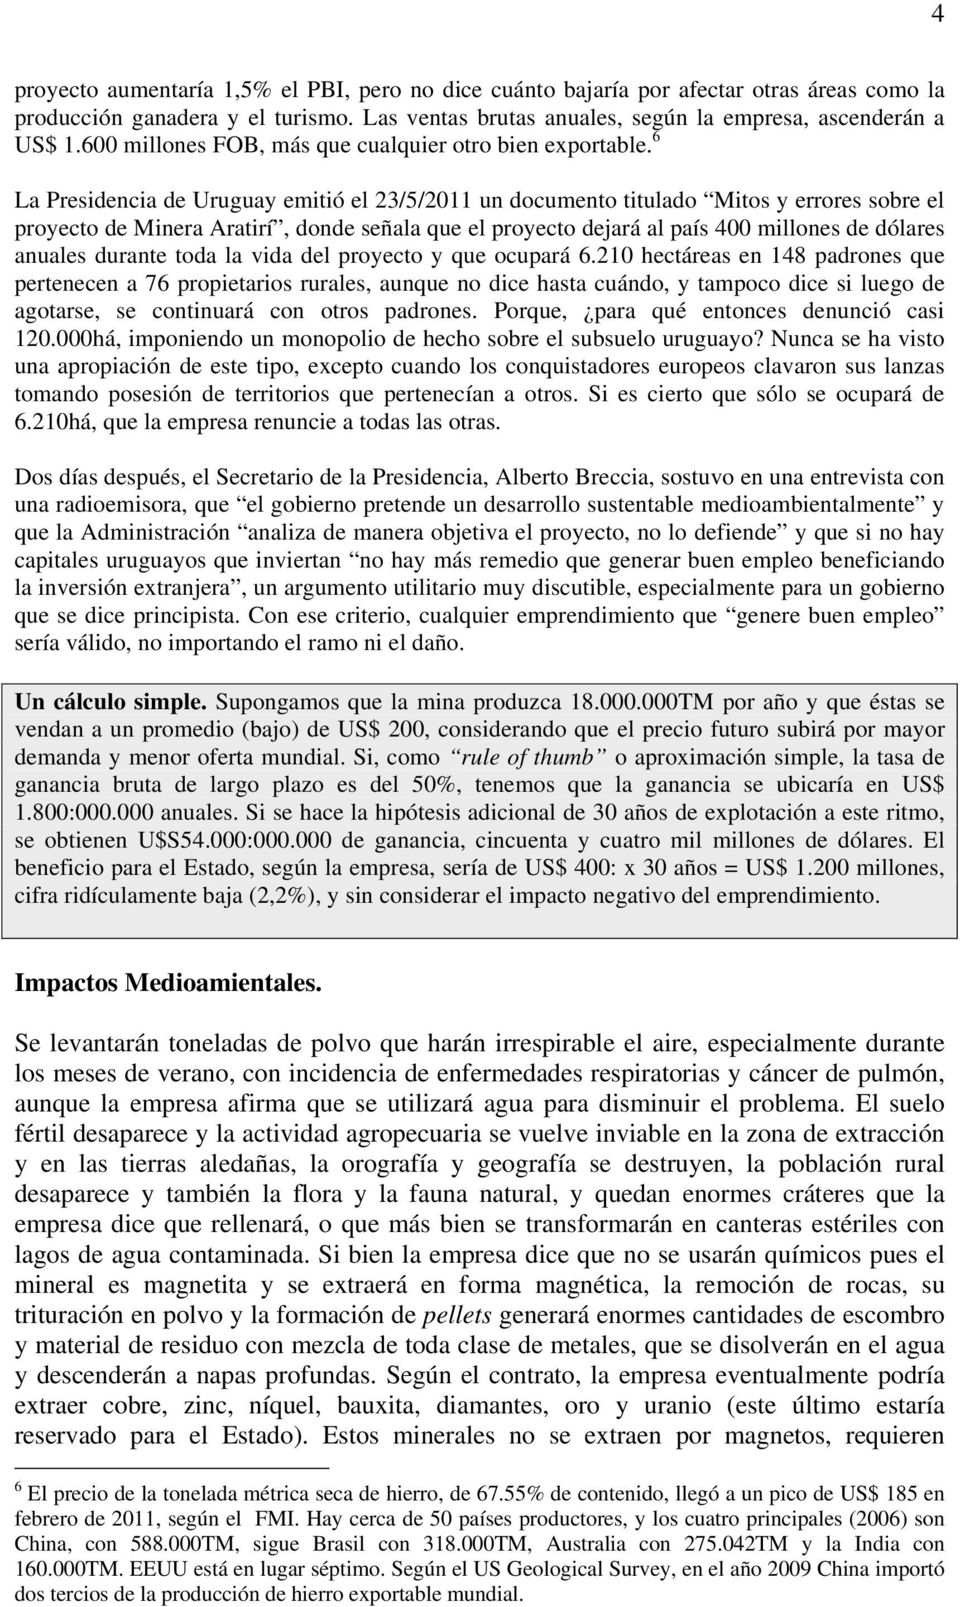 6 La Presidencia de Uruguay emitió el 23/5/2011 un documento titulado Mitos y errores sobre el proyecto de Minera Aratirí, donde señala que el proyecto dejará al país 400 millones de dólares anuales